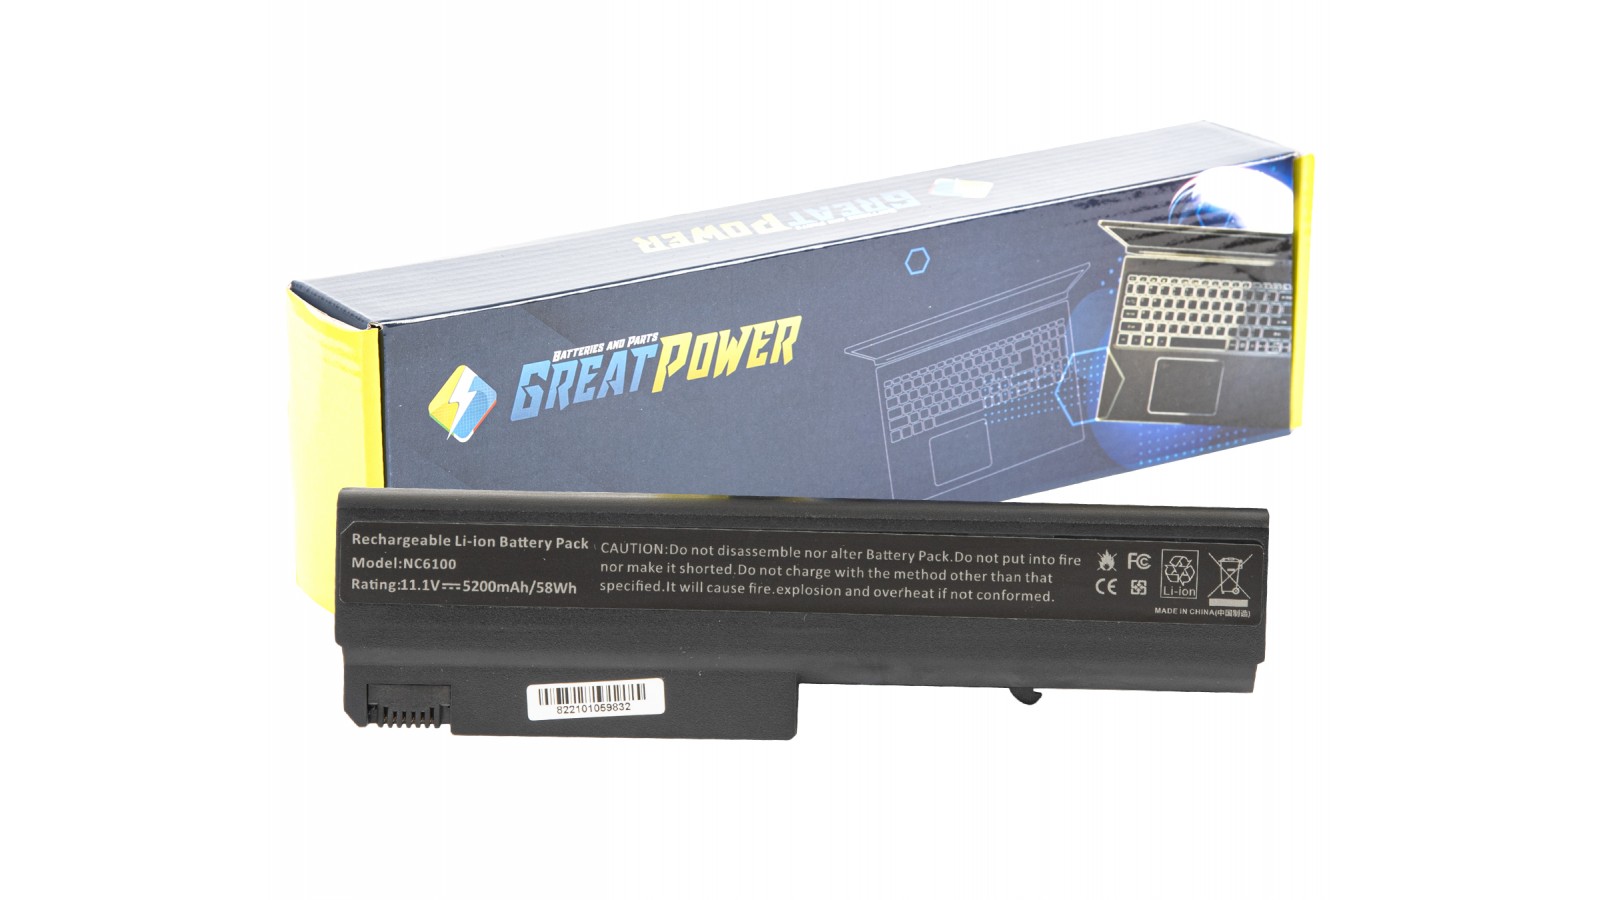 Batteria 5200mAh compatibile con HP 398875-001